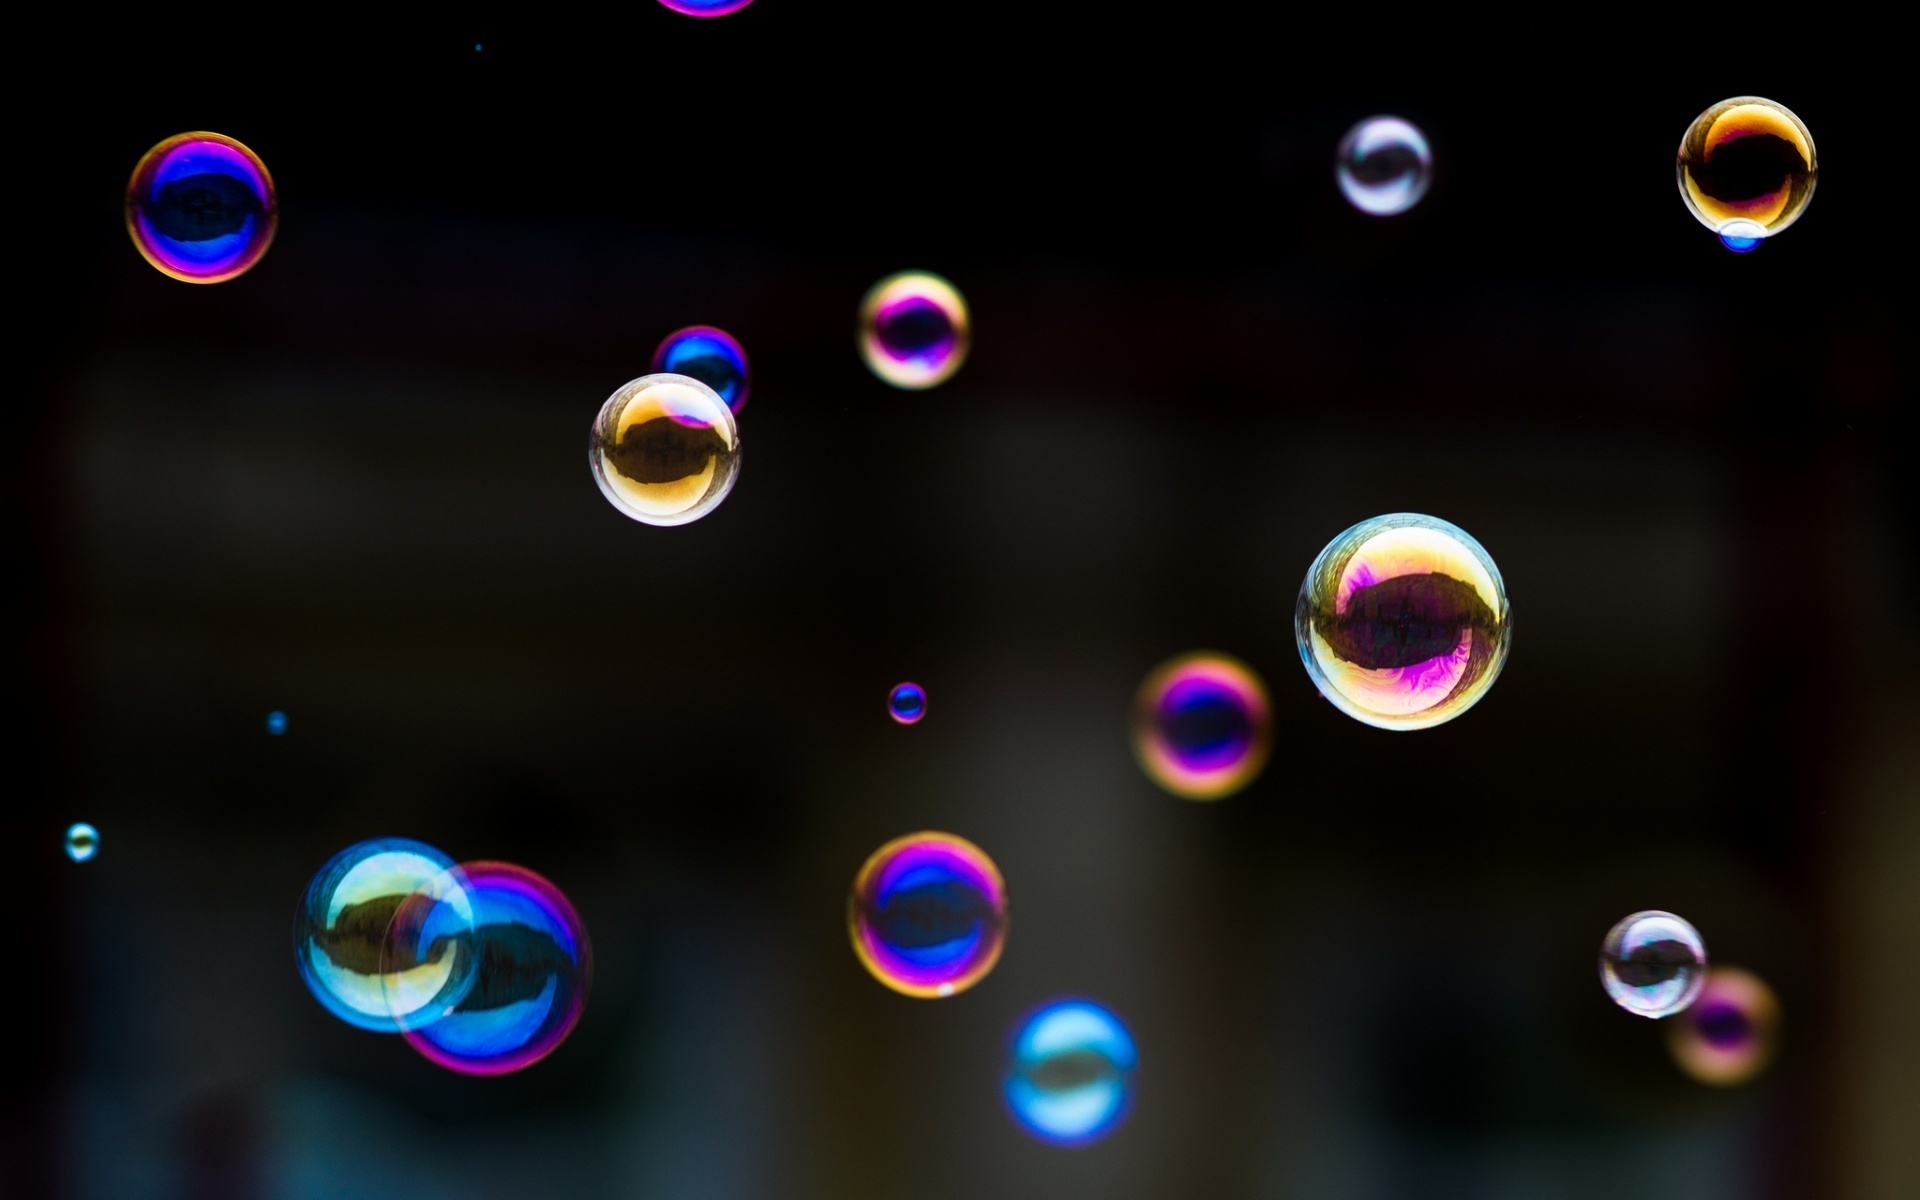 'Політичне рішення, яке не має змісту': Чернівецька райрада надула мильну бульбашку